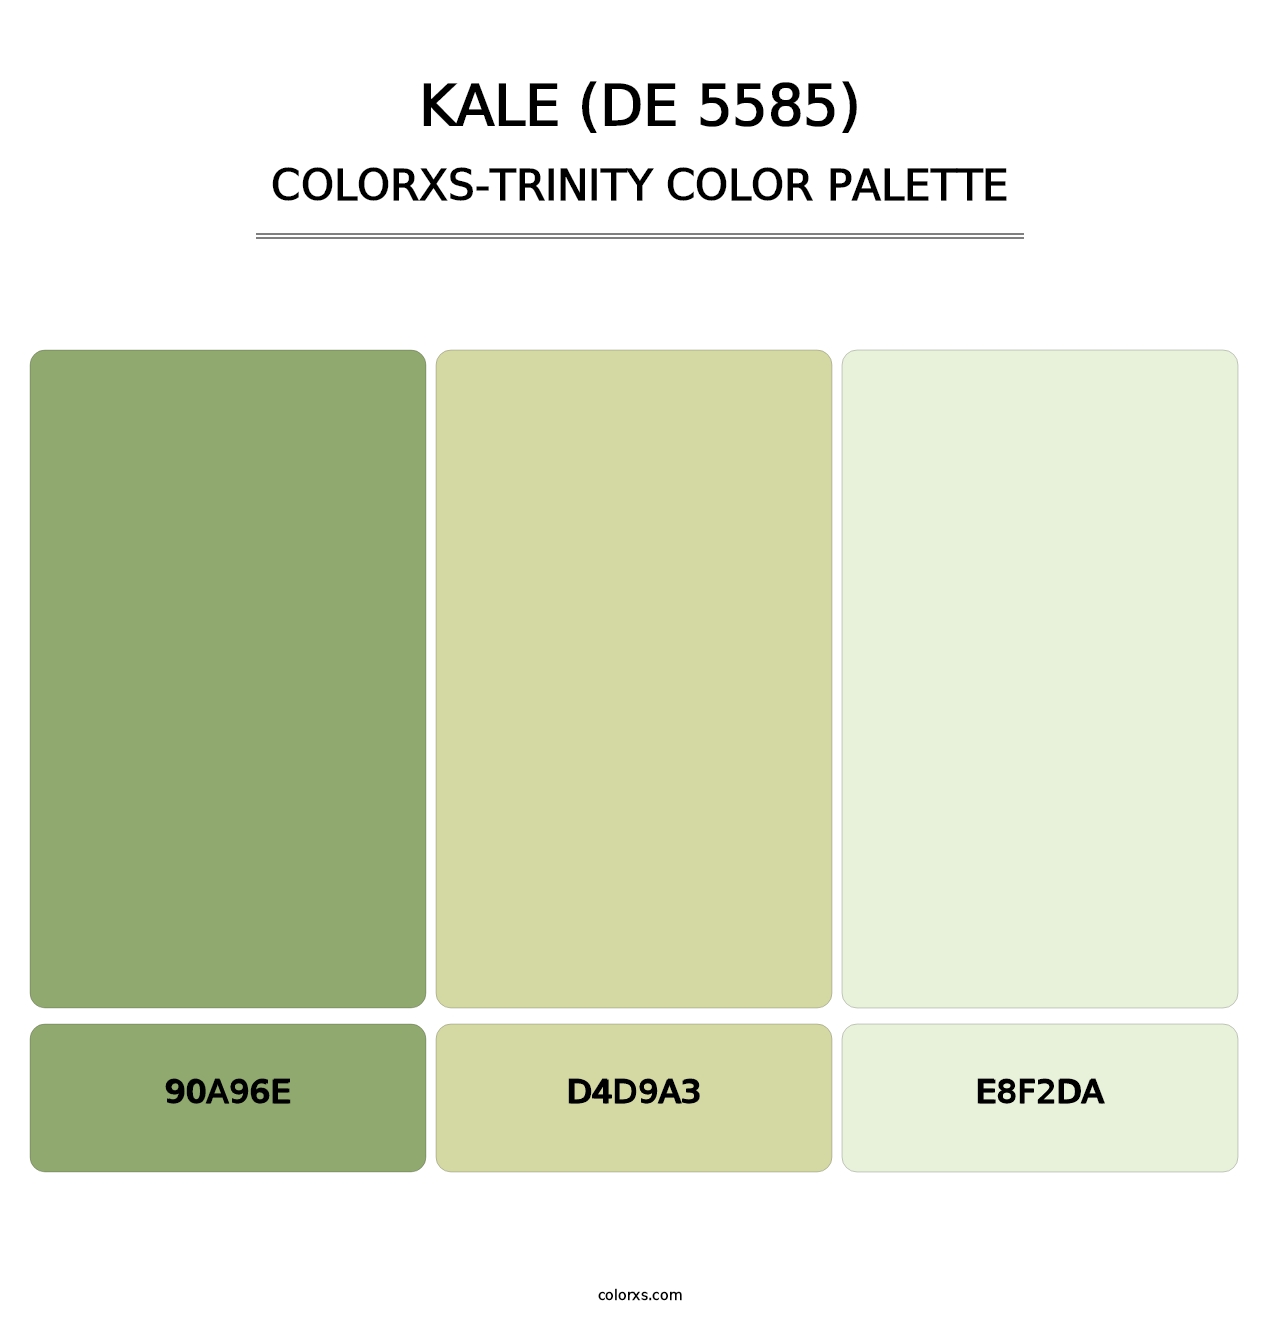 Kale (DE 5585) - Colorxs Trinity Palette